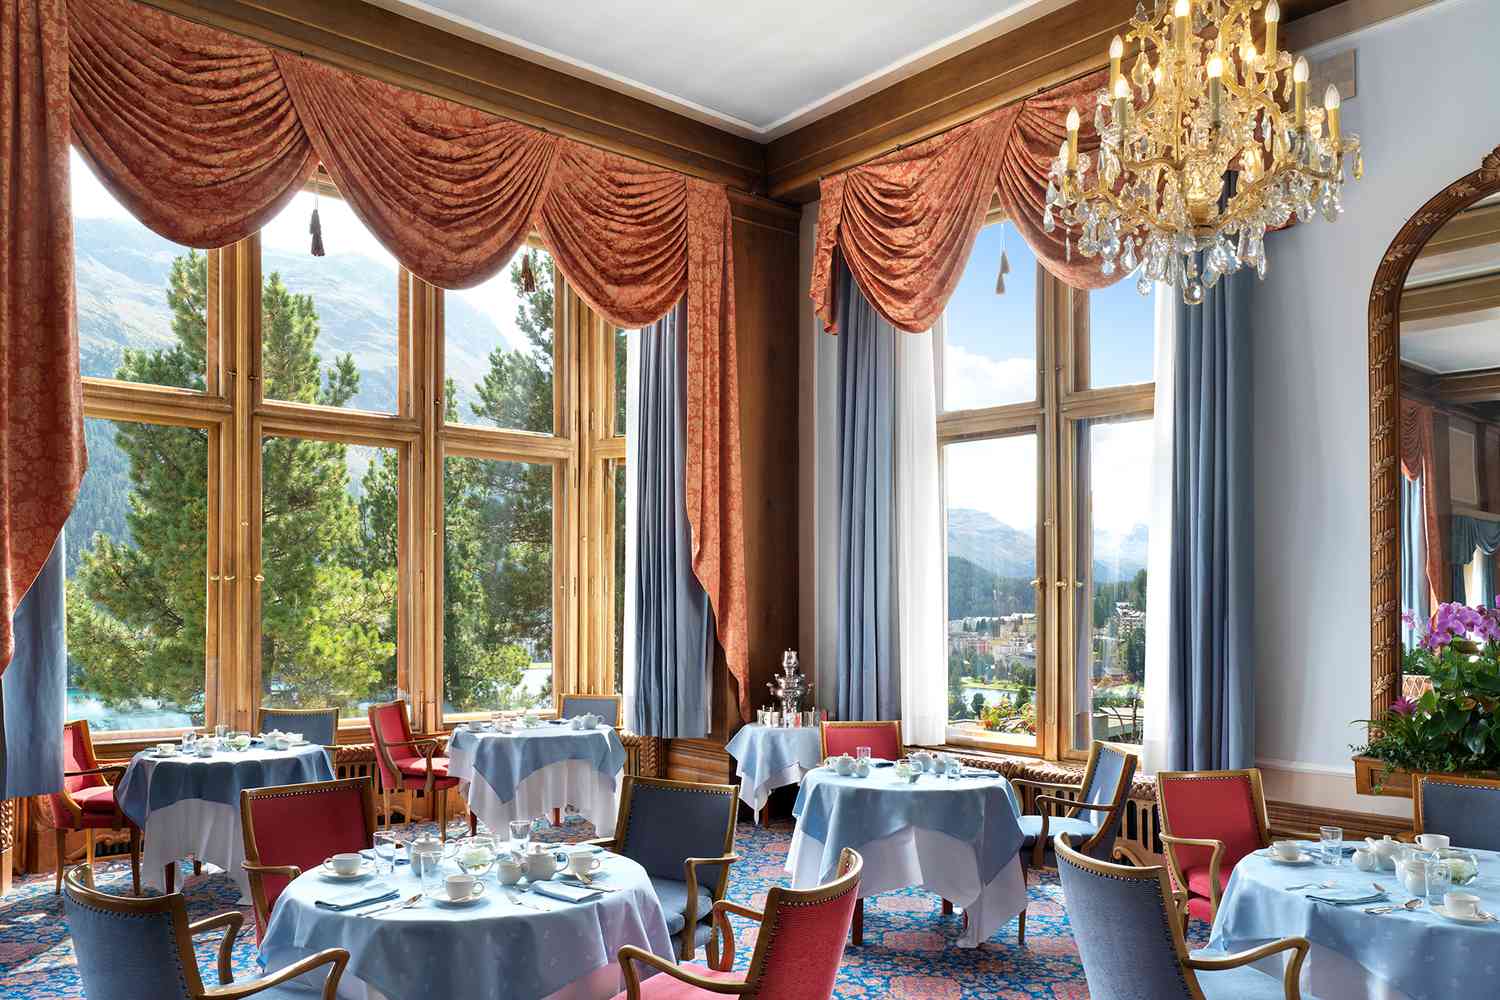 Dining room at Badruttâs Palace Hotel